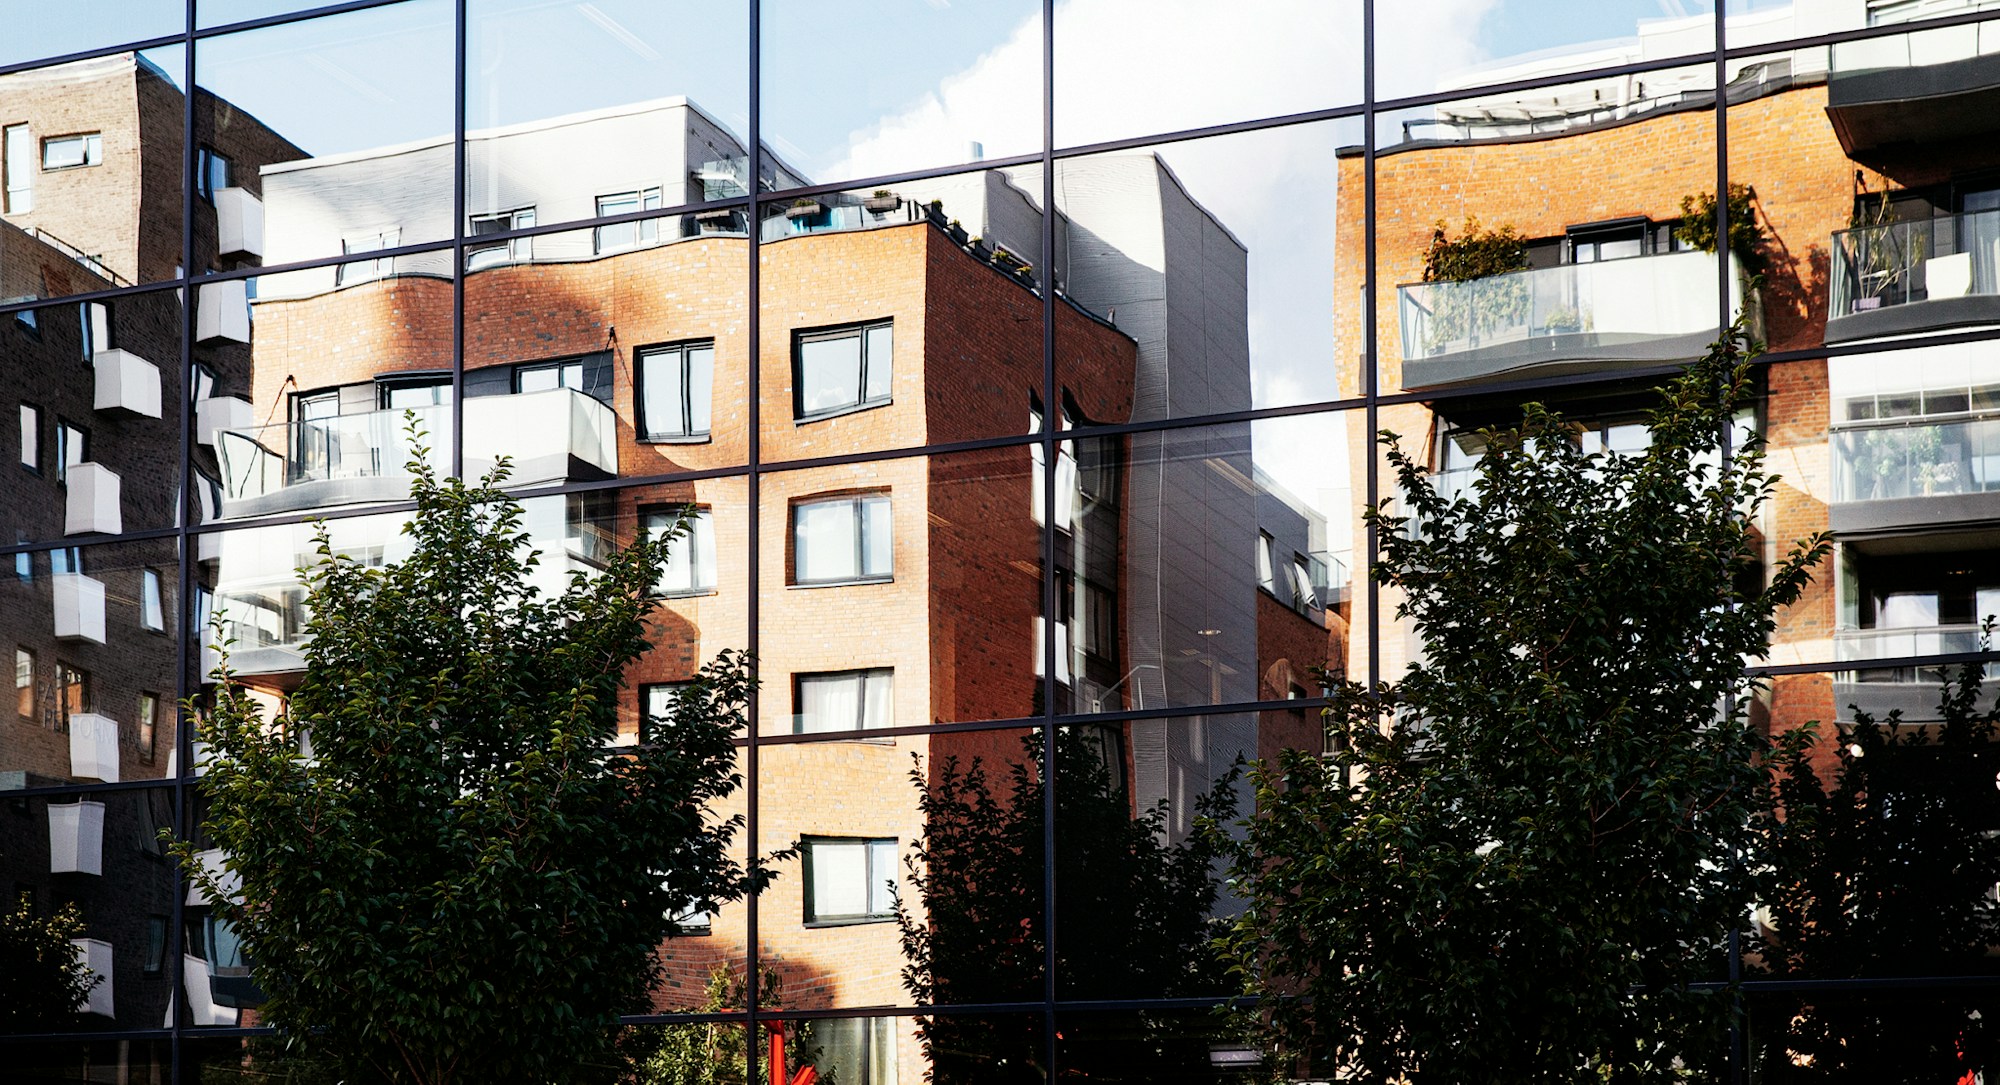 Bilde fra Kværnerbyen, hvor noen bygg speiler seg i glasset på et over veien.